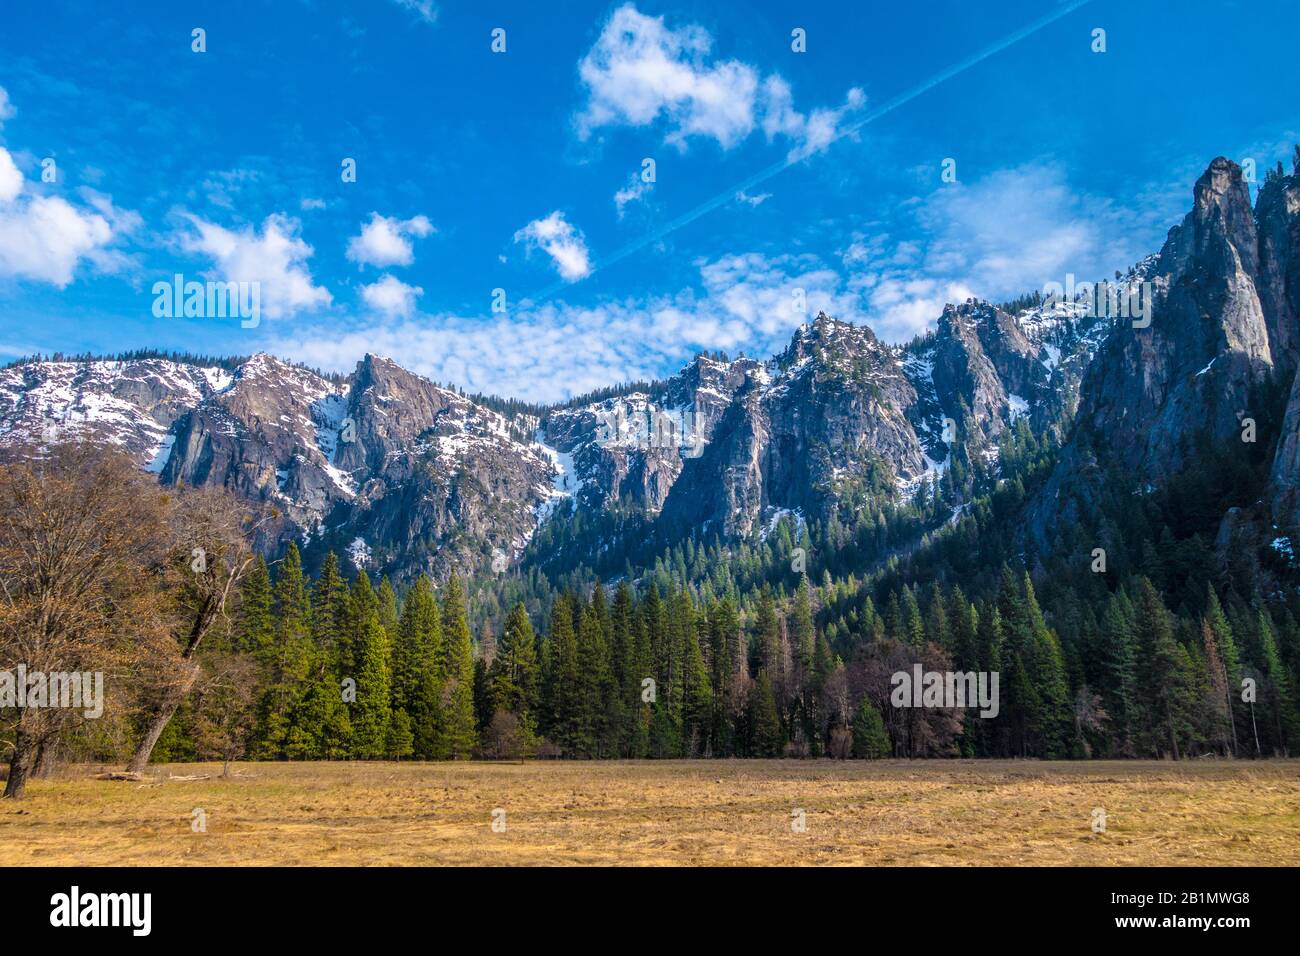 Schneebedeckte Berge und Bäume im Yosemite Valley. Lizenzfreies Foto. Stockfoto